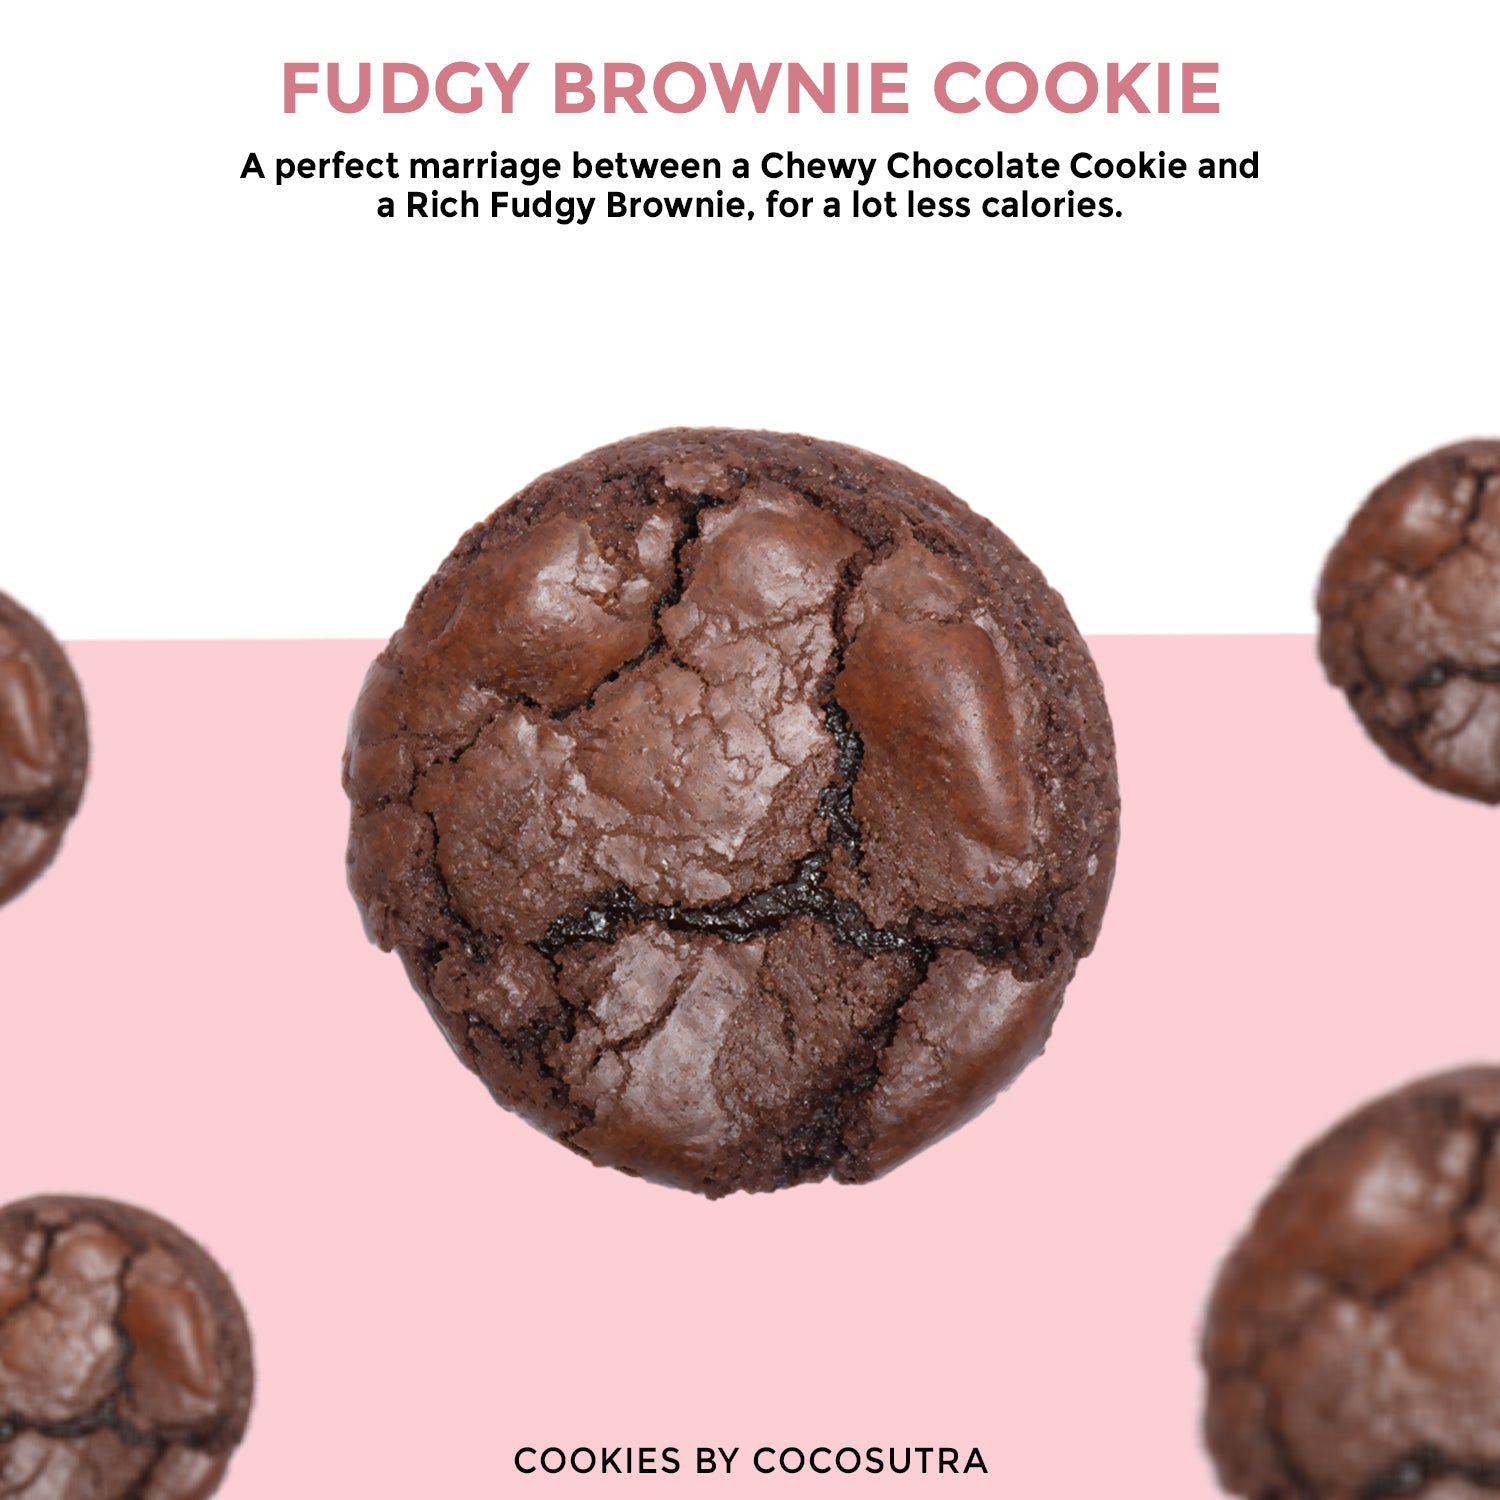 Cocosutra Fudgy Brownie Cookies - Freshly Baked